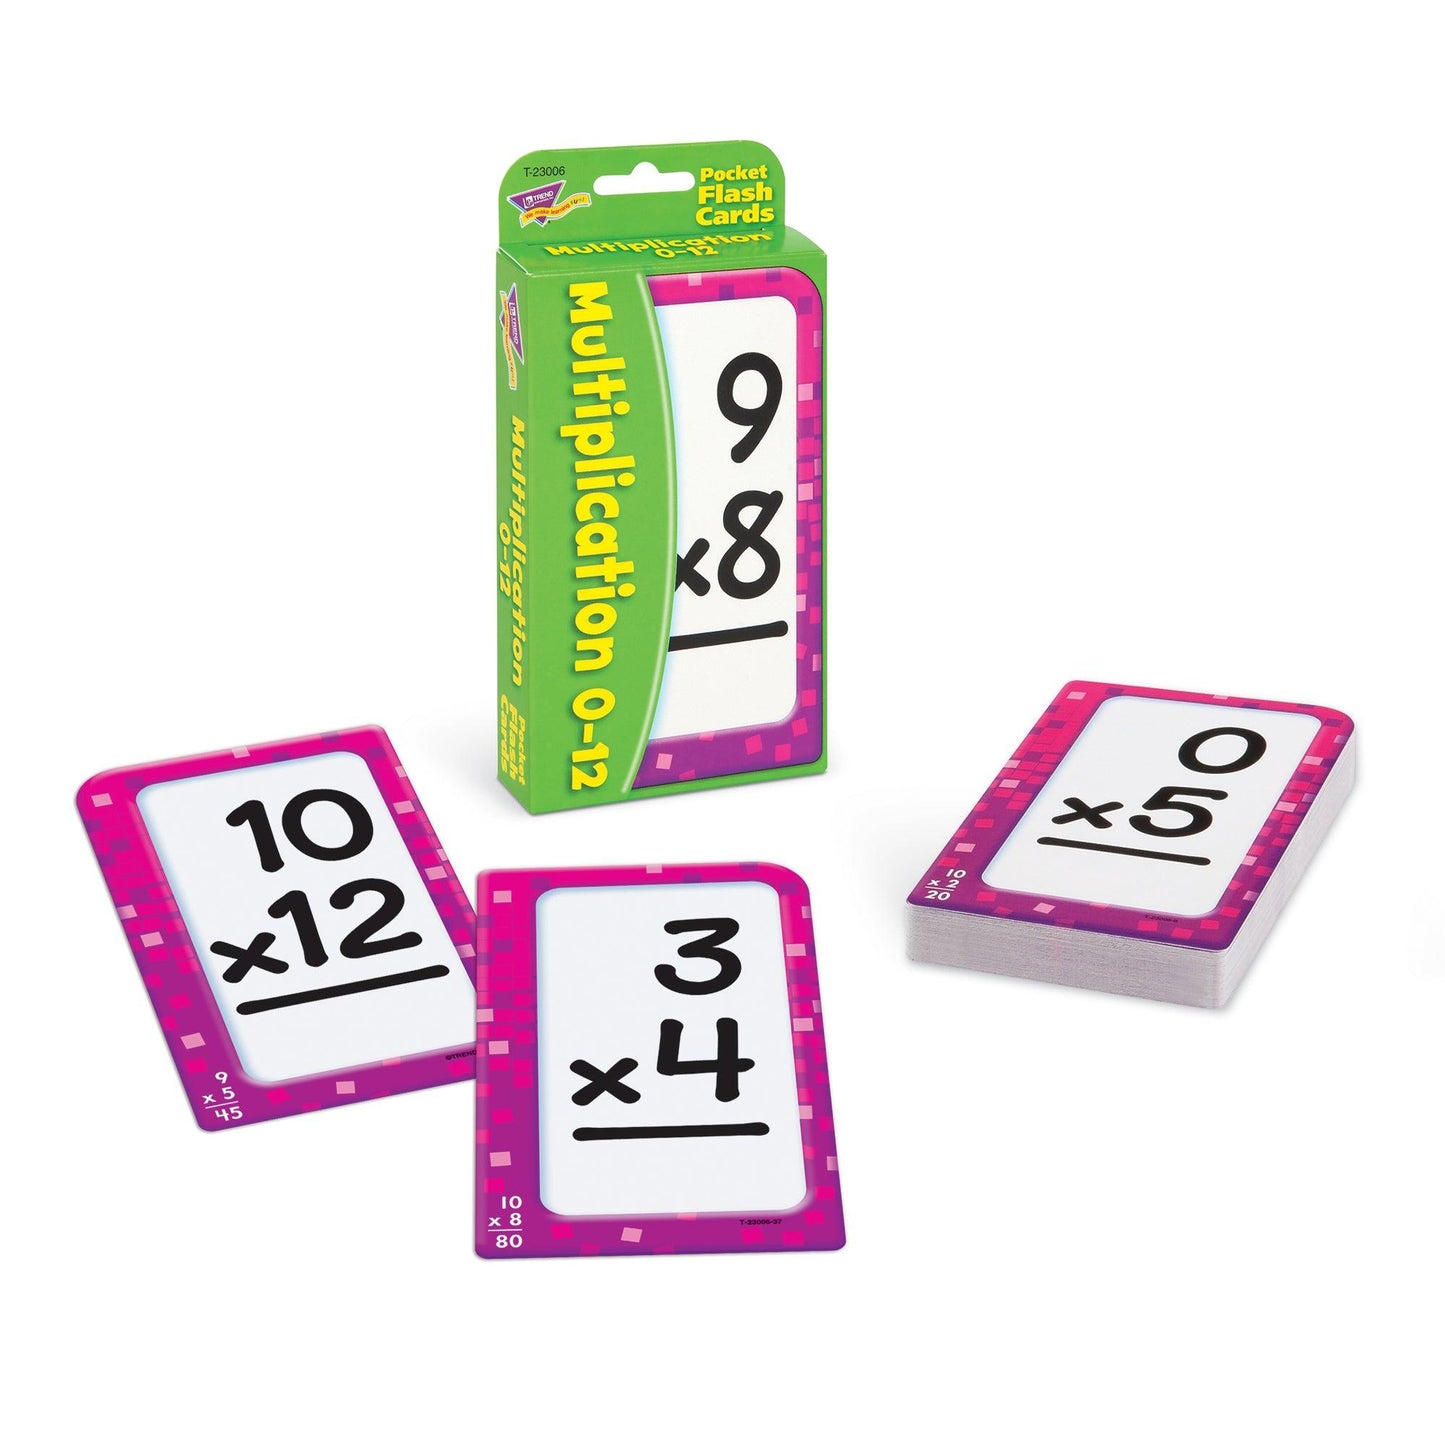 Multiplication 0-12 Pocket Flash Cards, 6 Packs - Loomini